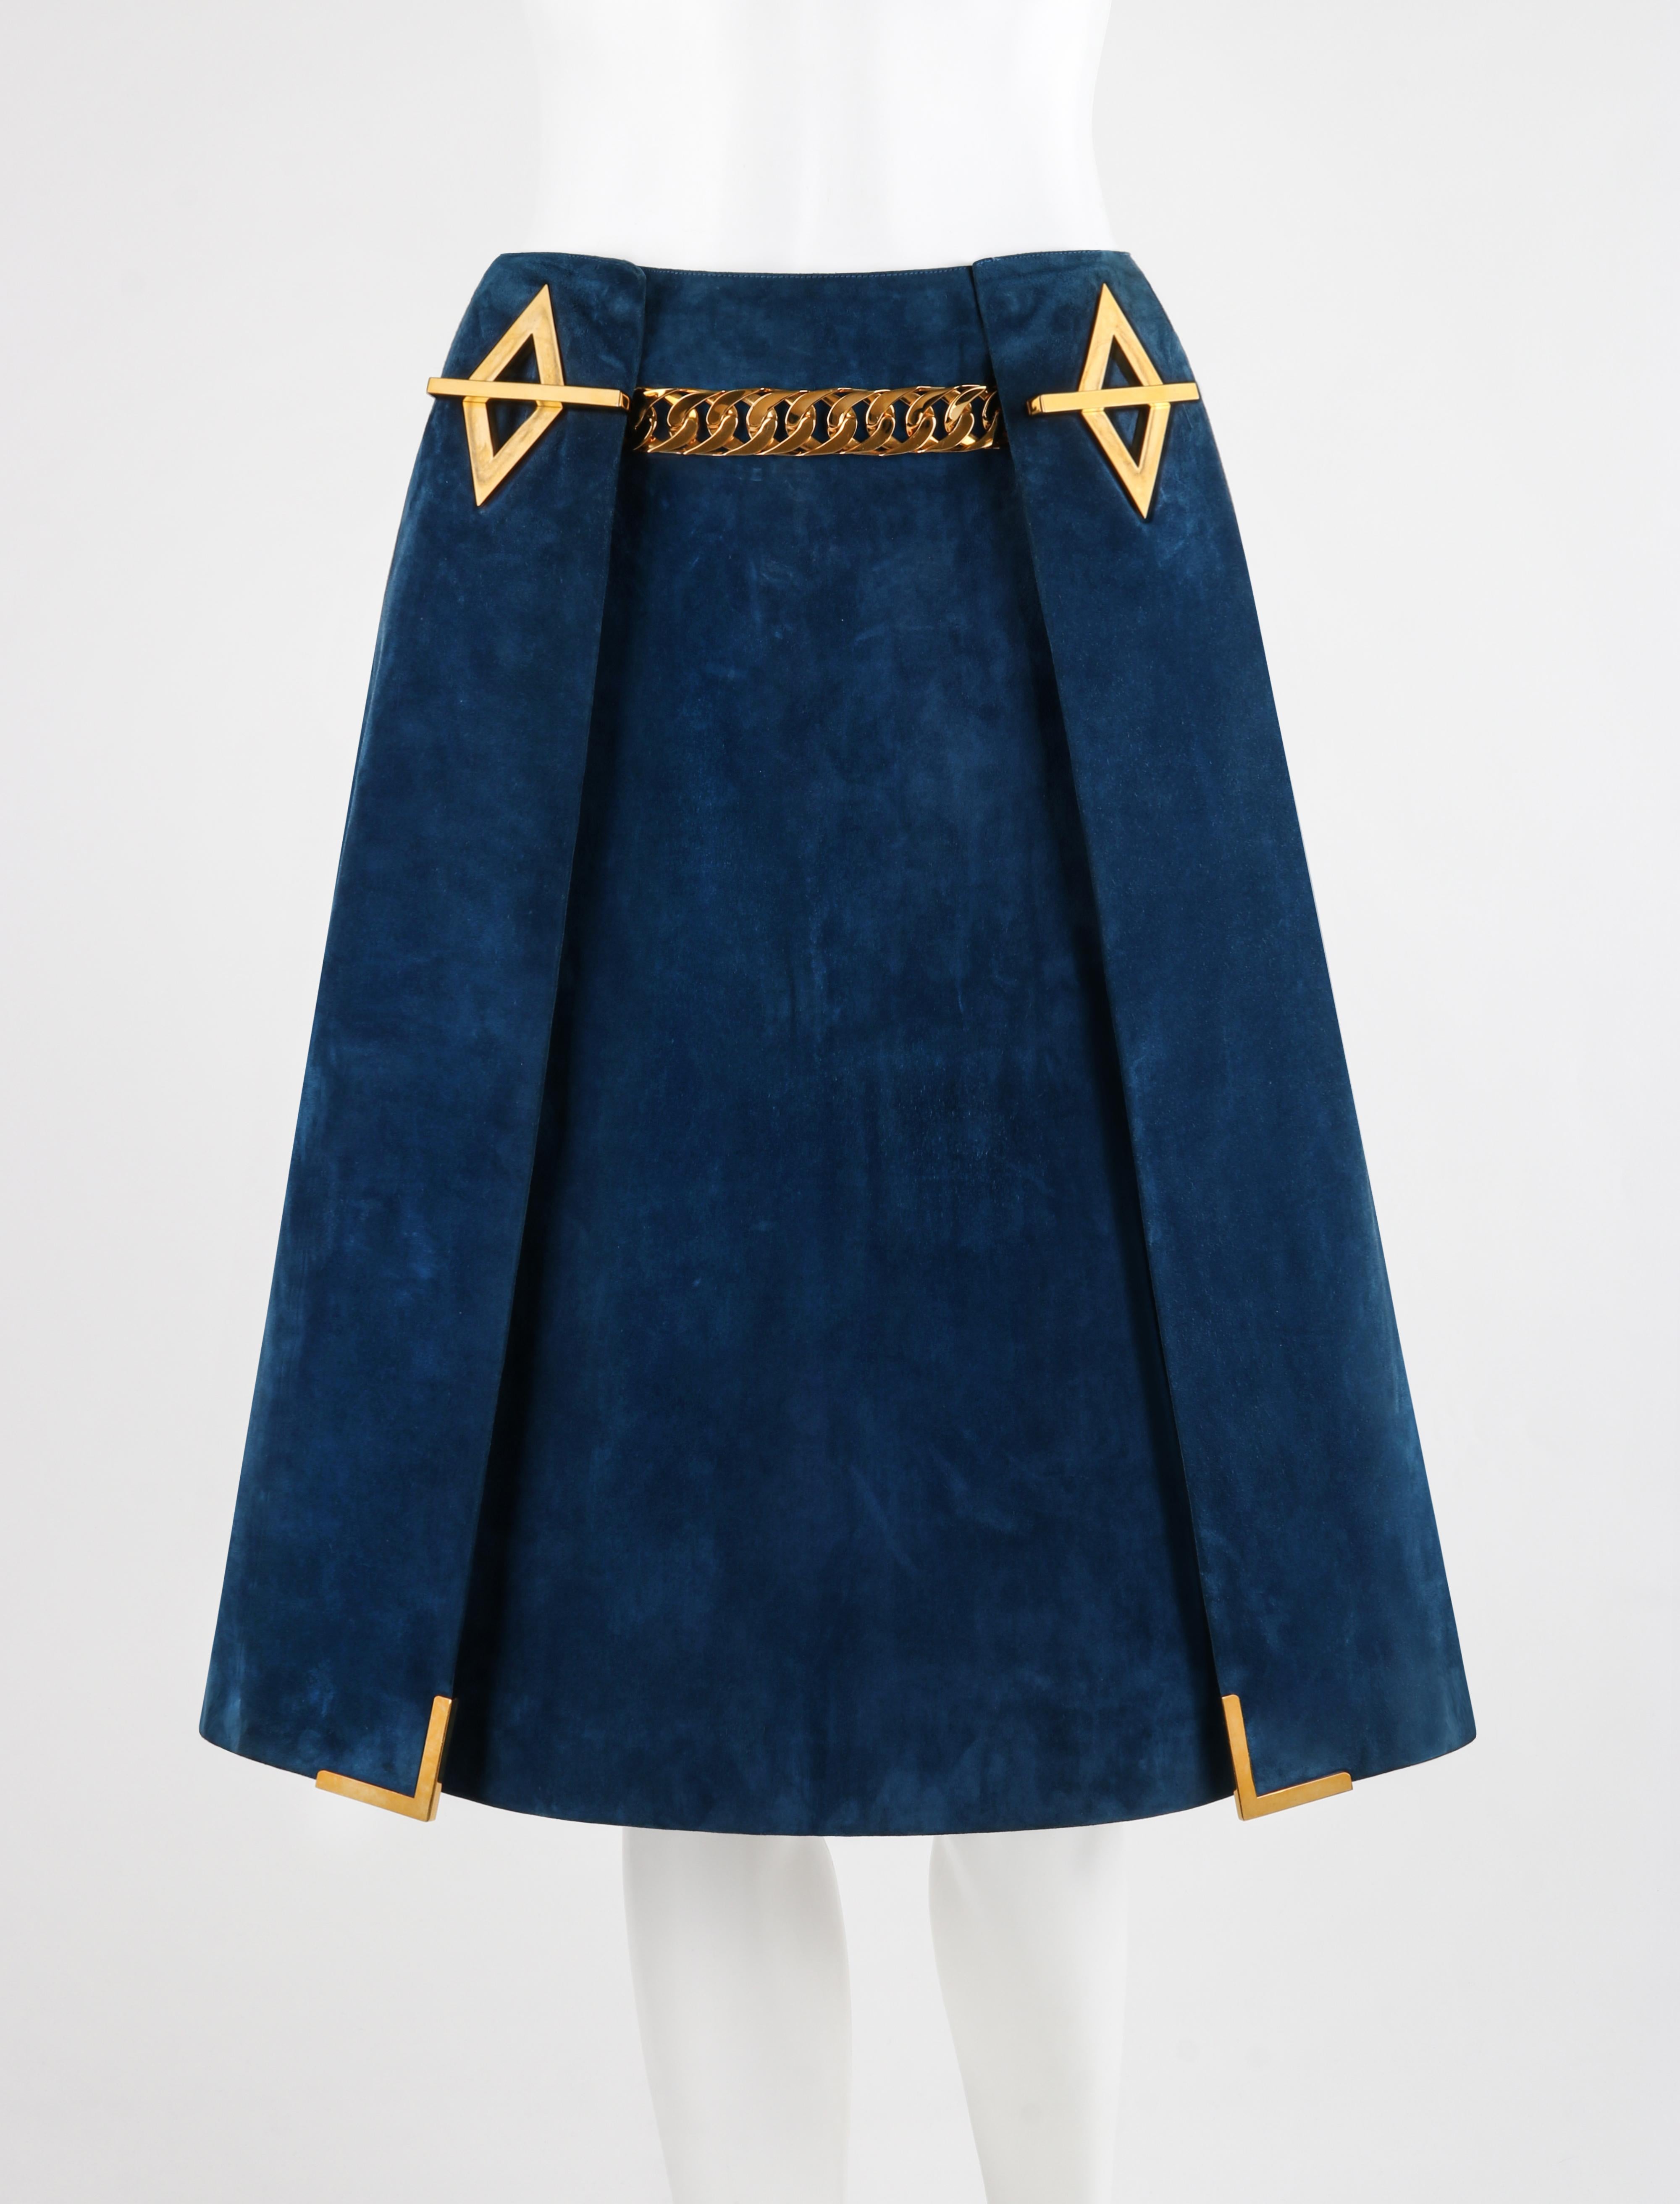 Gucci c.1970's Dark Blue Suede Gold Chain Belt Pleated A-Line Knee Length Skirt RARE

Marque / Fabricant : Gucci
Circa : 1970's
Style : Jupe A Line
Couleur(s) : Bleu, Or
Doublée : Oui
Tissu non marqué (sensation de) : Daim (extérieur), Acétate